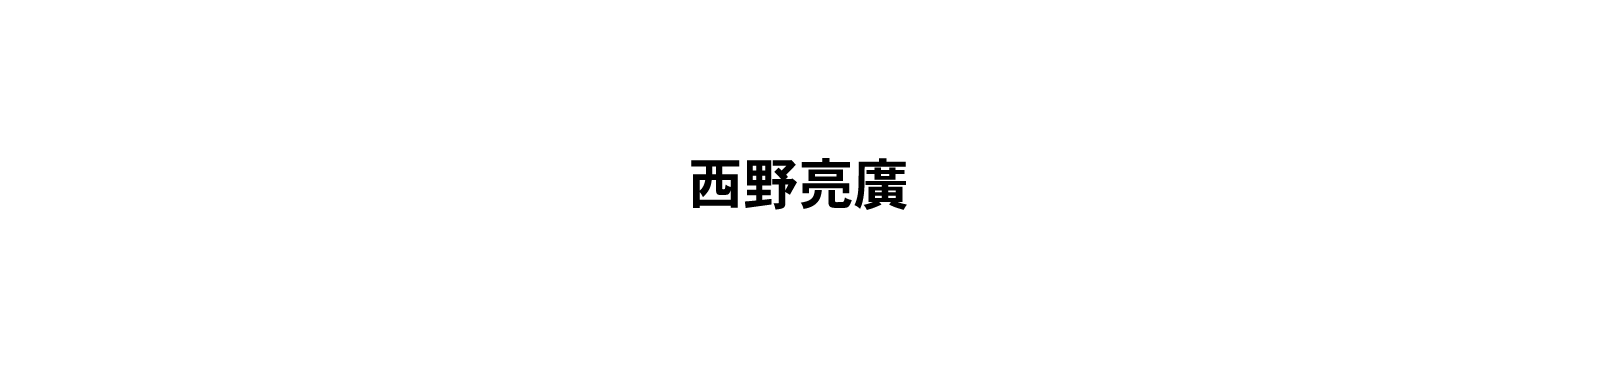 【西野亮廣】発売4カ月前にしてAmazonランキング1位を獲得したビジネス書『夢と金』のまえがき